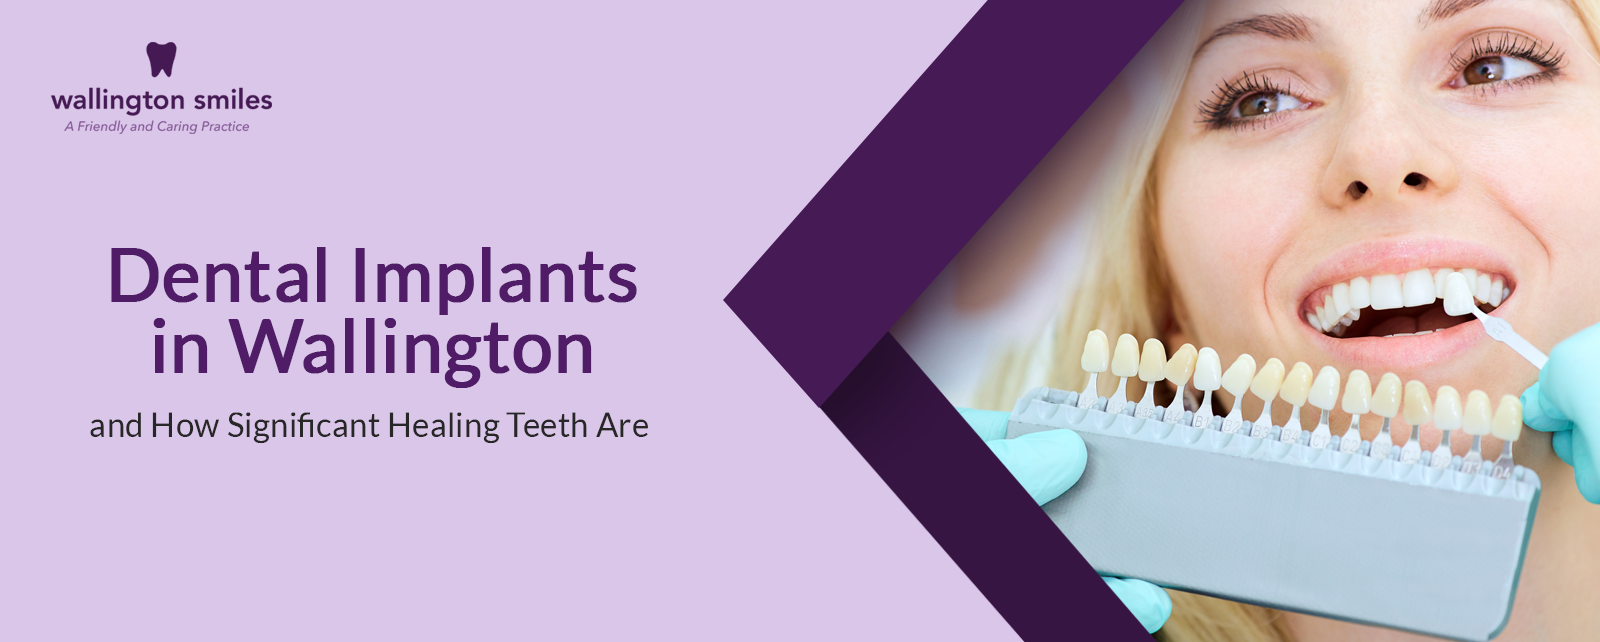 Dental Implants in Wallington